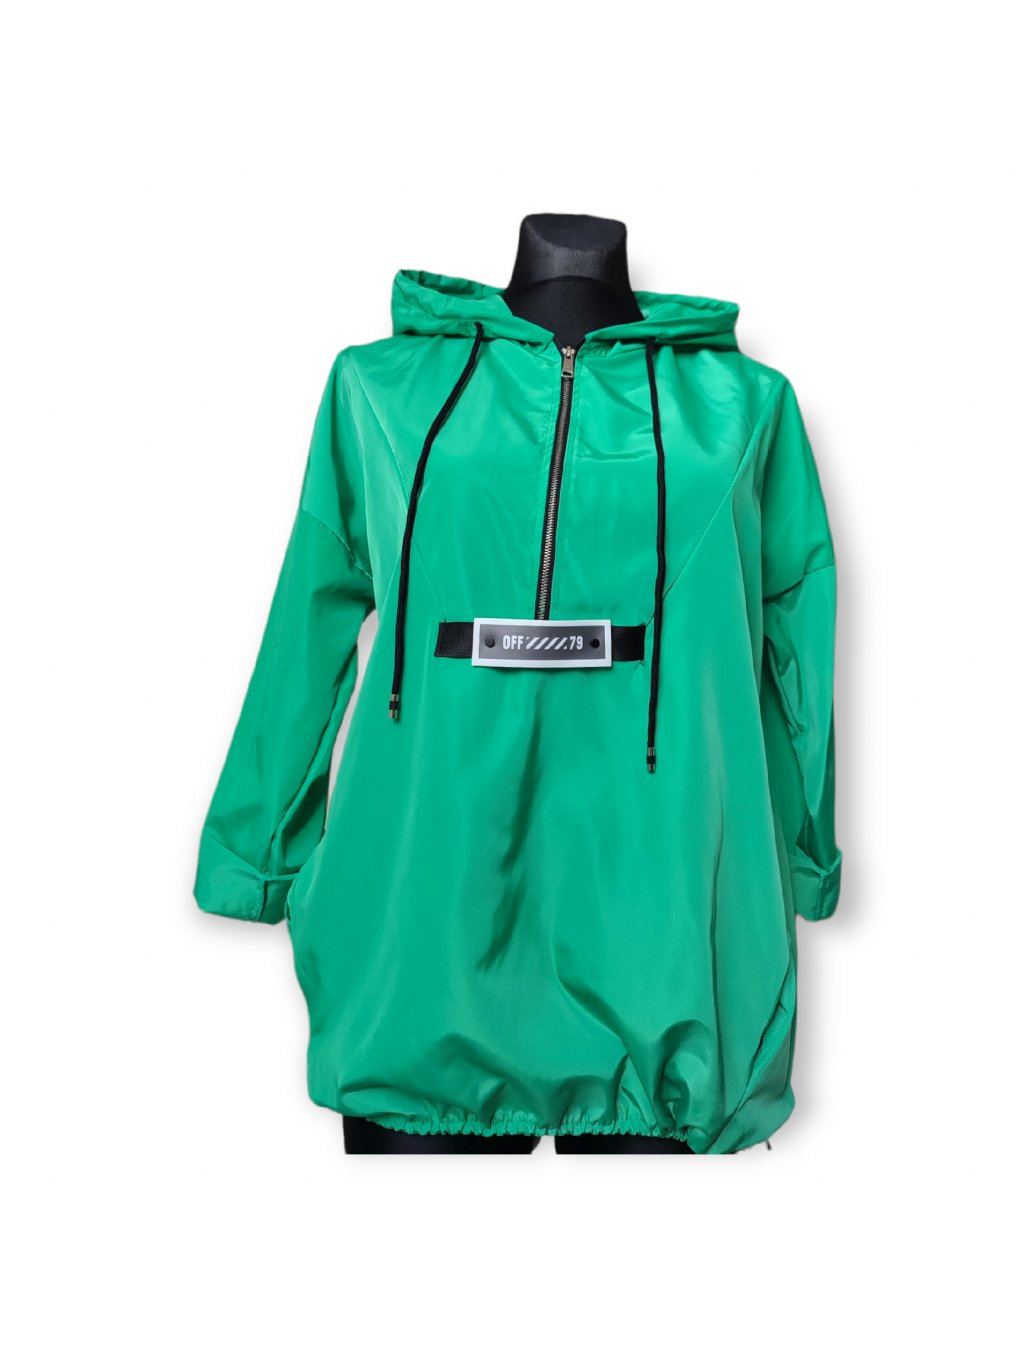 Volnočasová lehká jarní bunda zelená, univerzální velikost